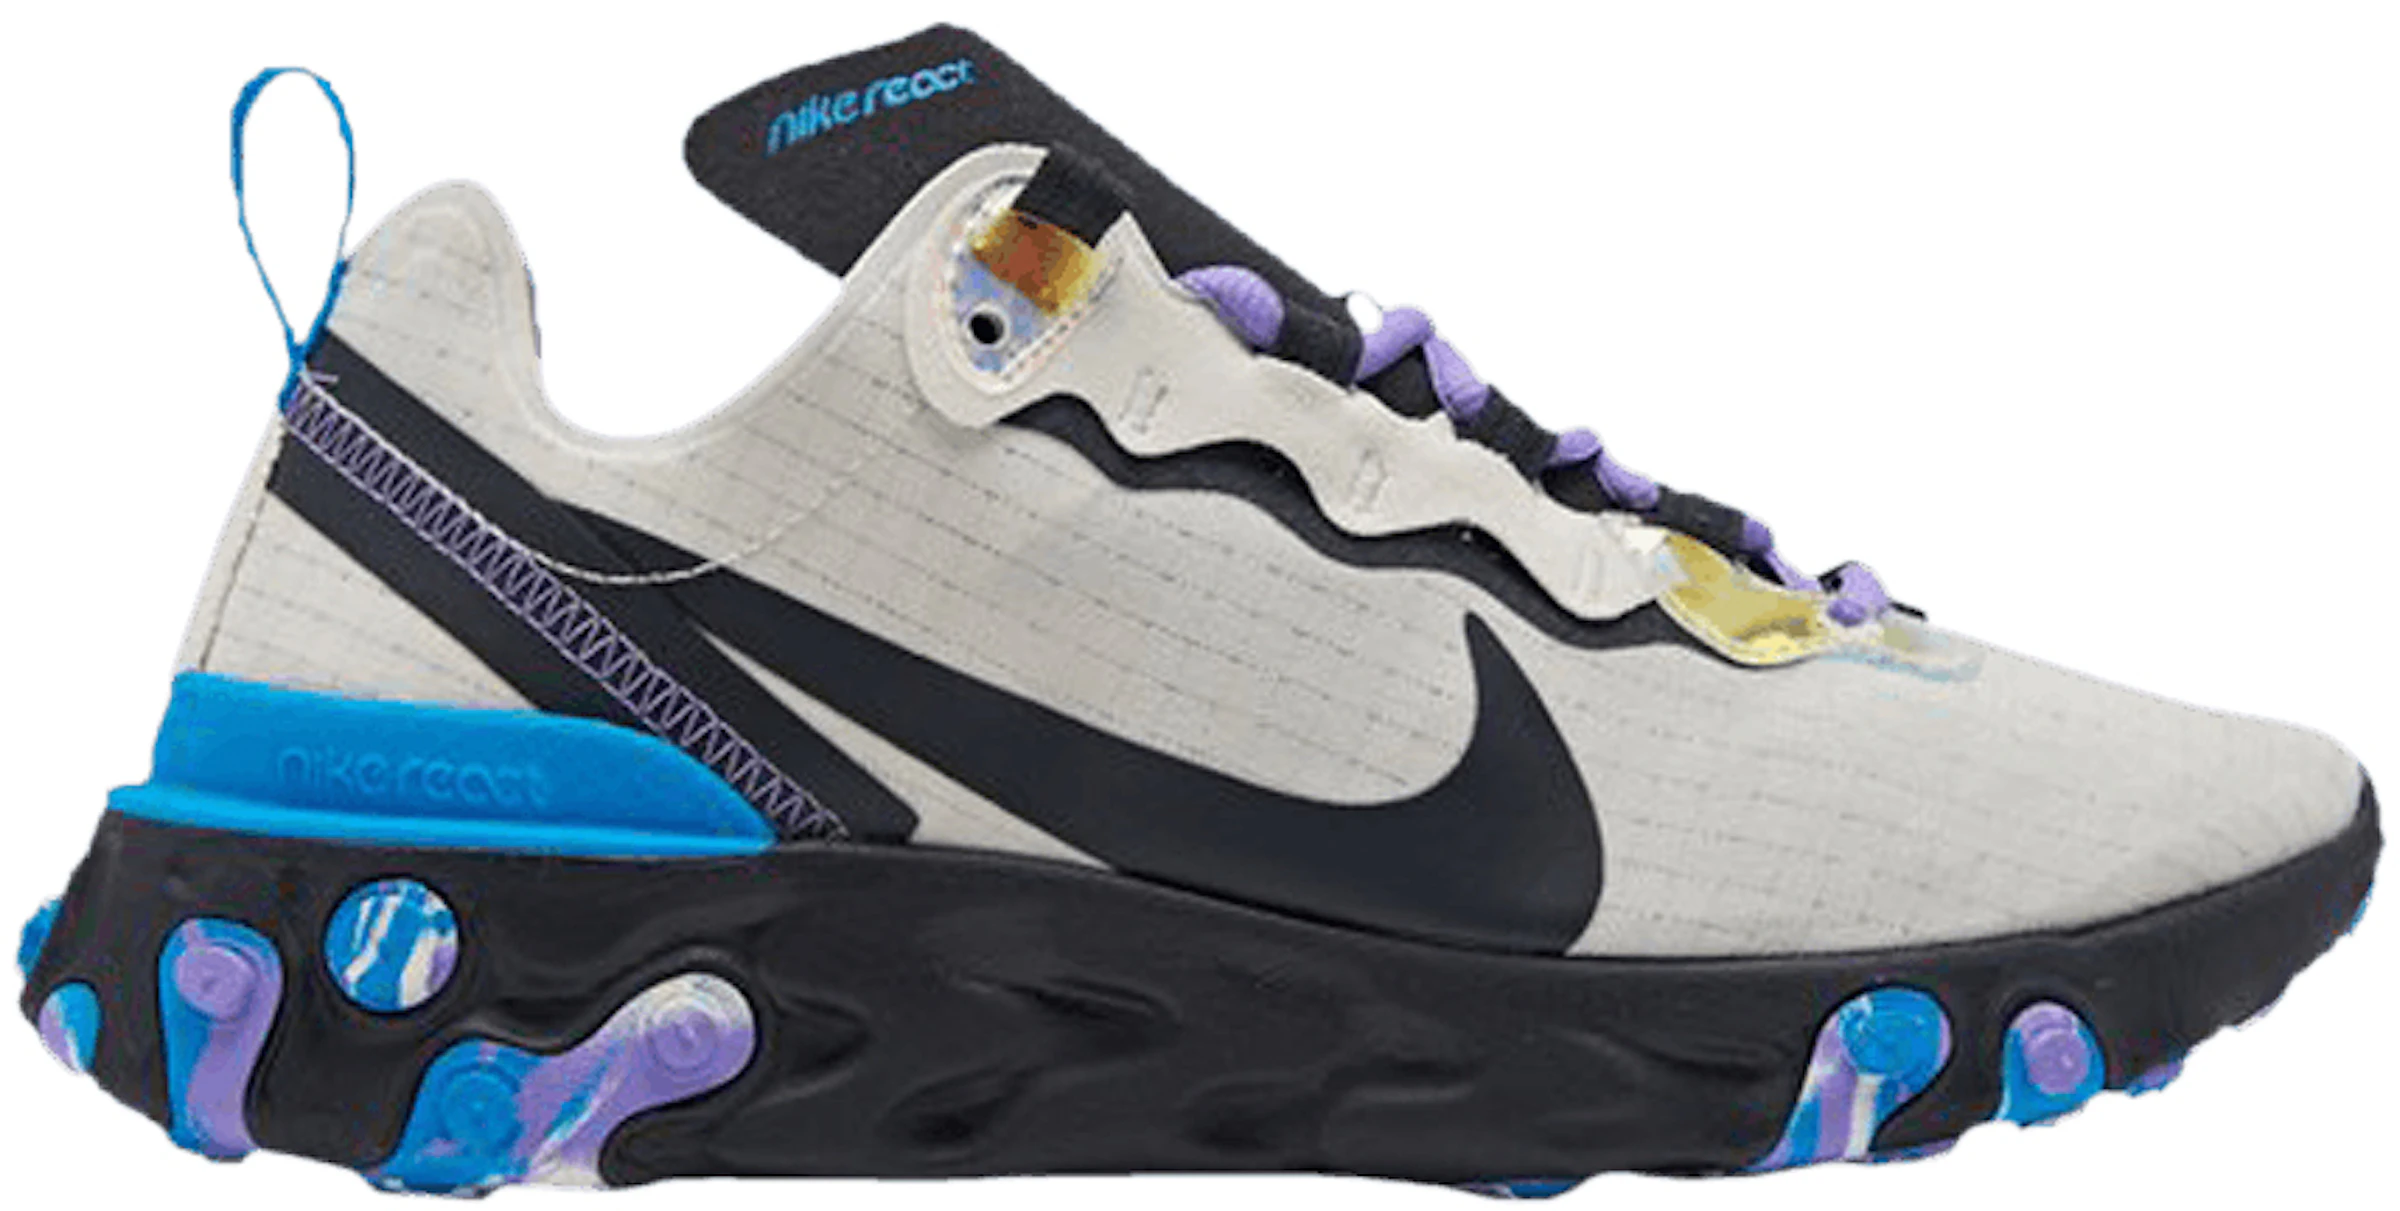 Ocurrencia Gallina El uno al otro Buy Nike React Element Shoes & New Sneakers - StockX